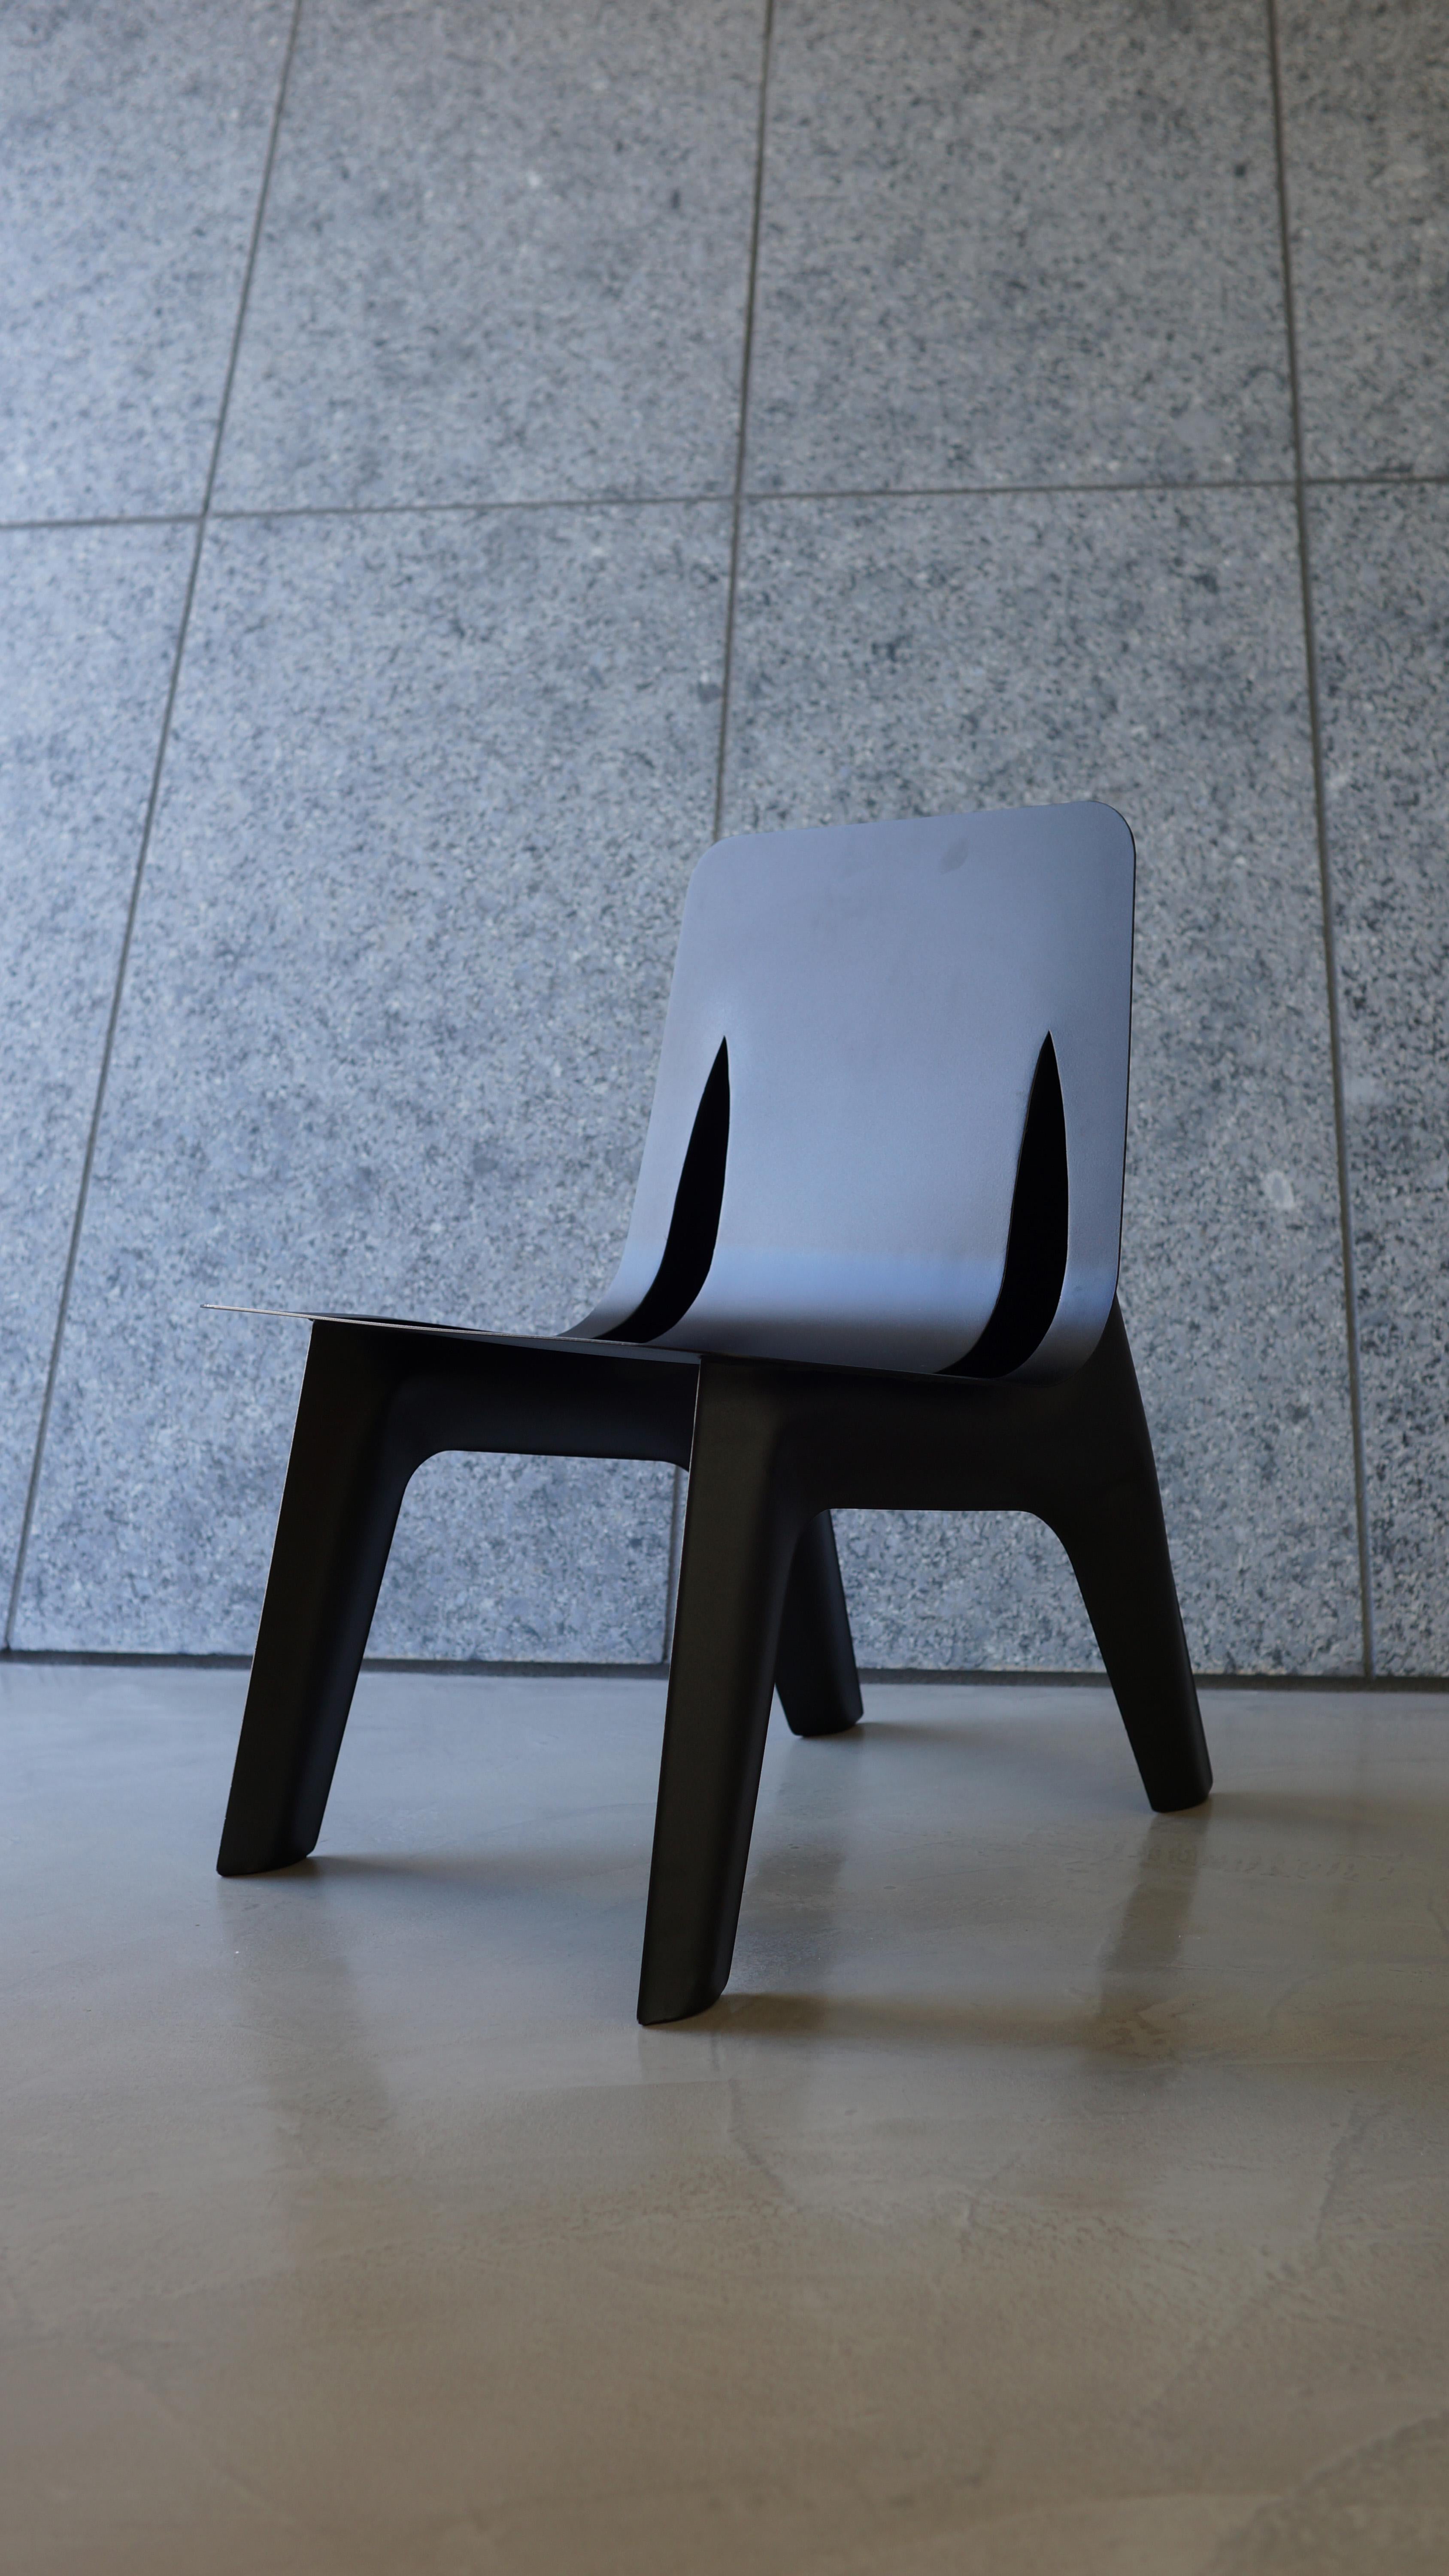 J-chair ist ein weiteres Manifest von FiDU mit einem starken und ikonischen visuellen Charakter und einer leichten und dauerhaften Konstruktion. J-Chair wurde auf besonderen Wunsch für das Museum Jerke in Recklinghausen Win Germany entwickelt. Es